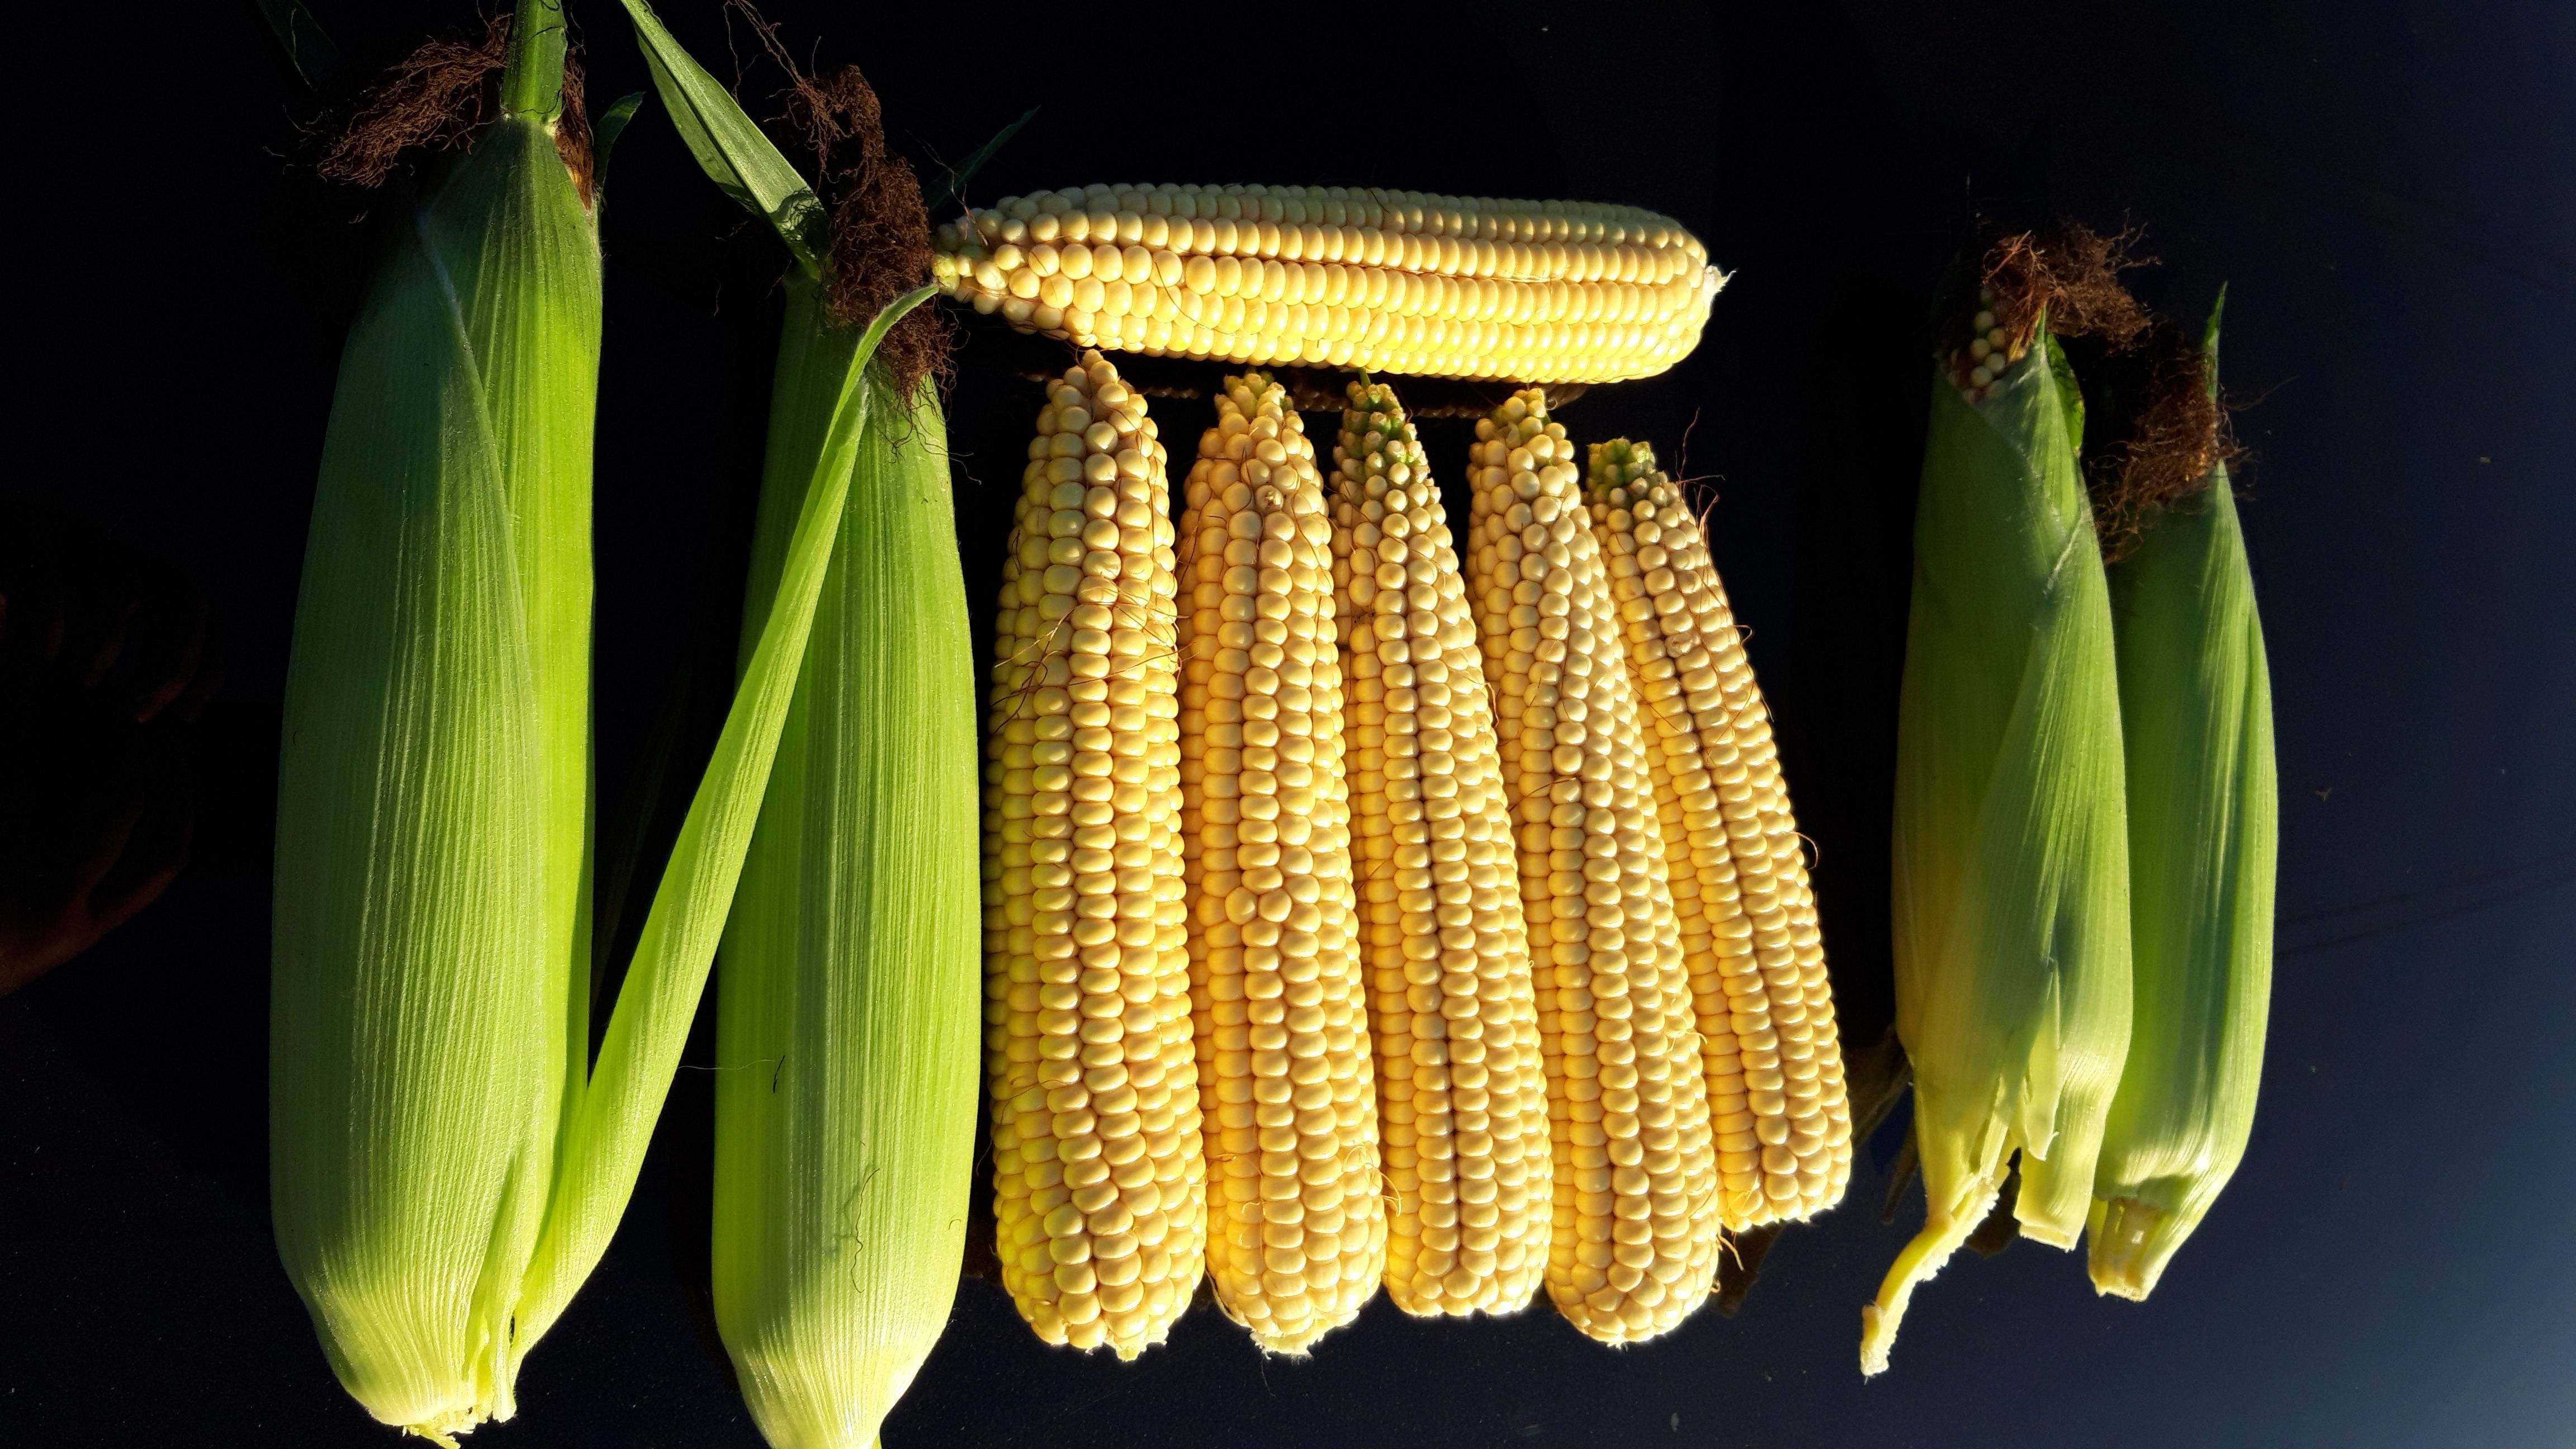 Сорта кукурузы – что посеять и на что можно рассчитывать при этом